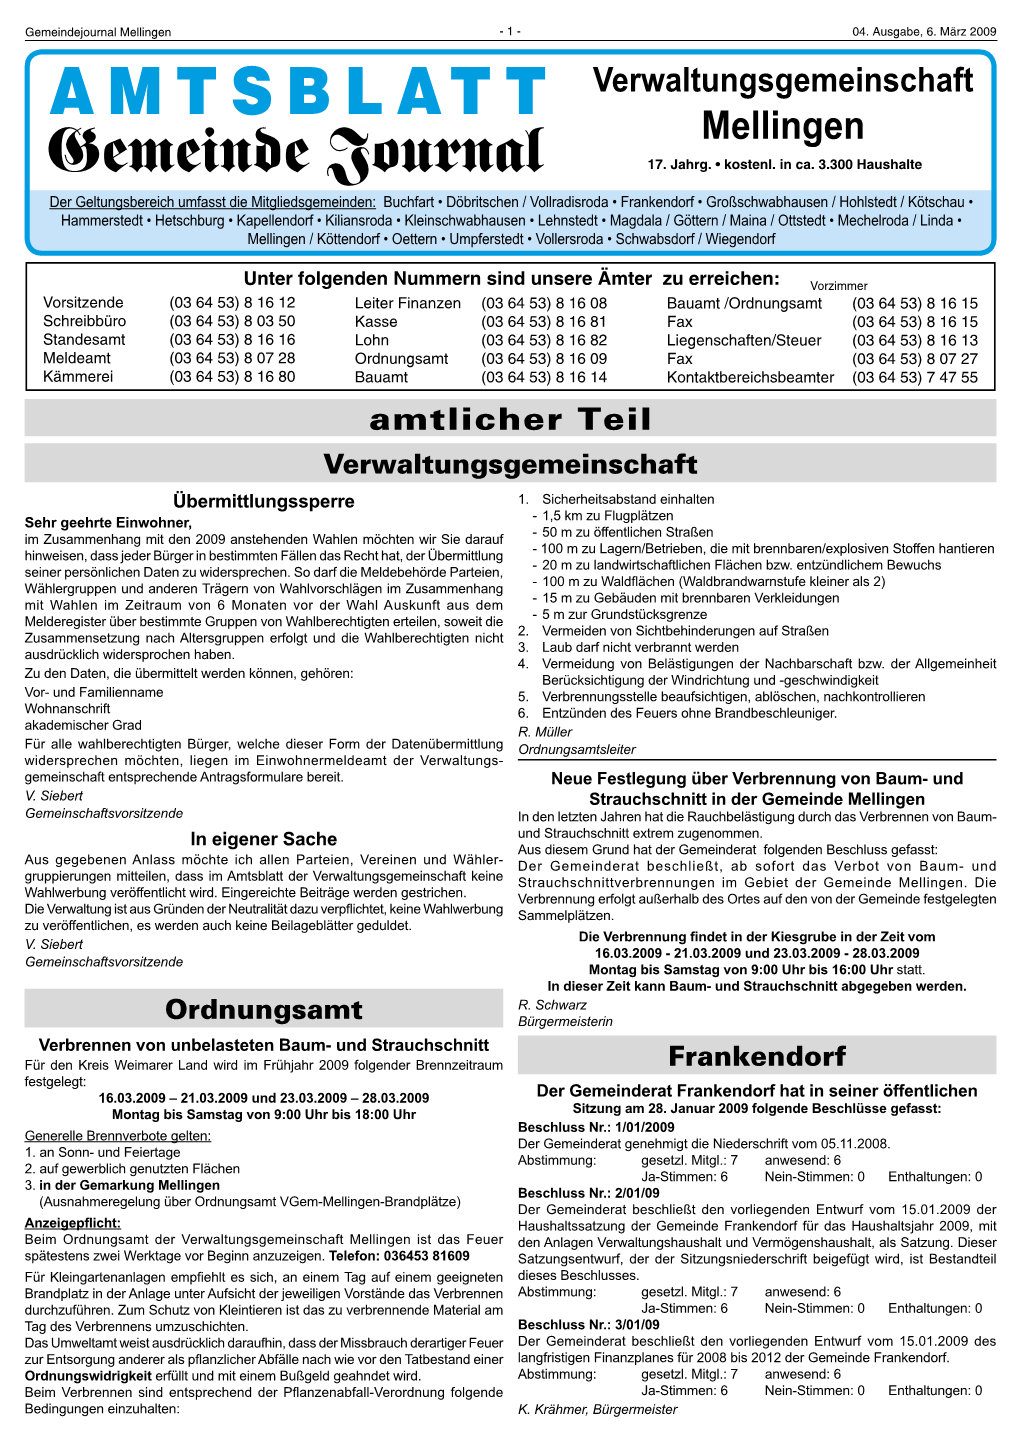 AMTSBLATT Verwaltungsgemeinschaft Mellingen Gemeinde Journal 17